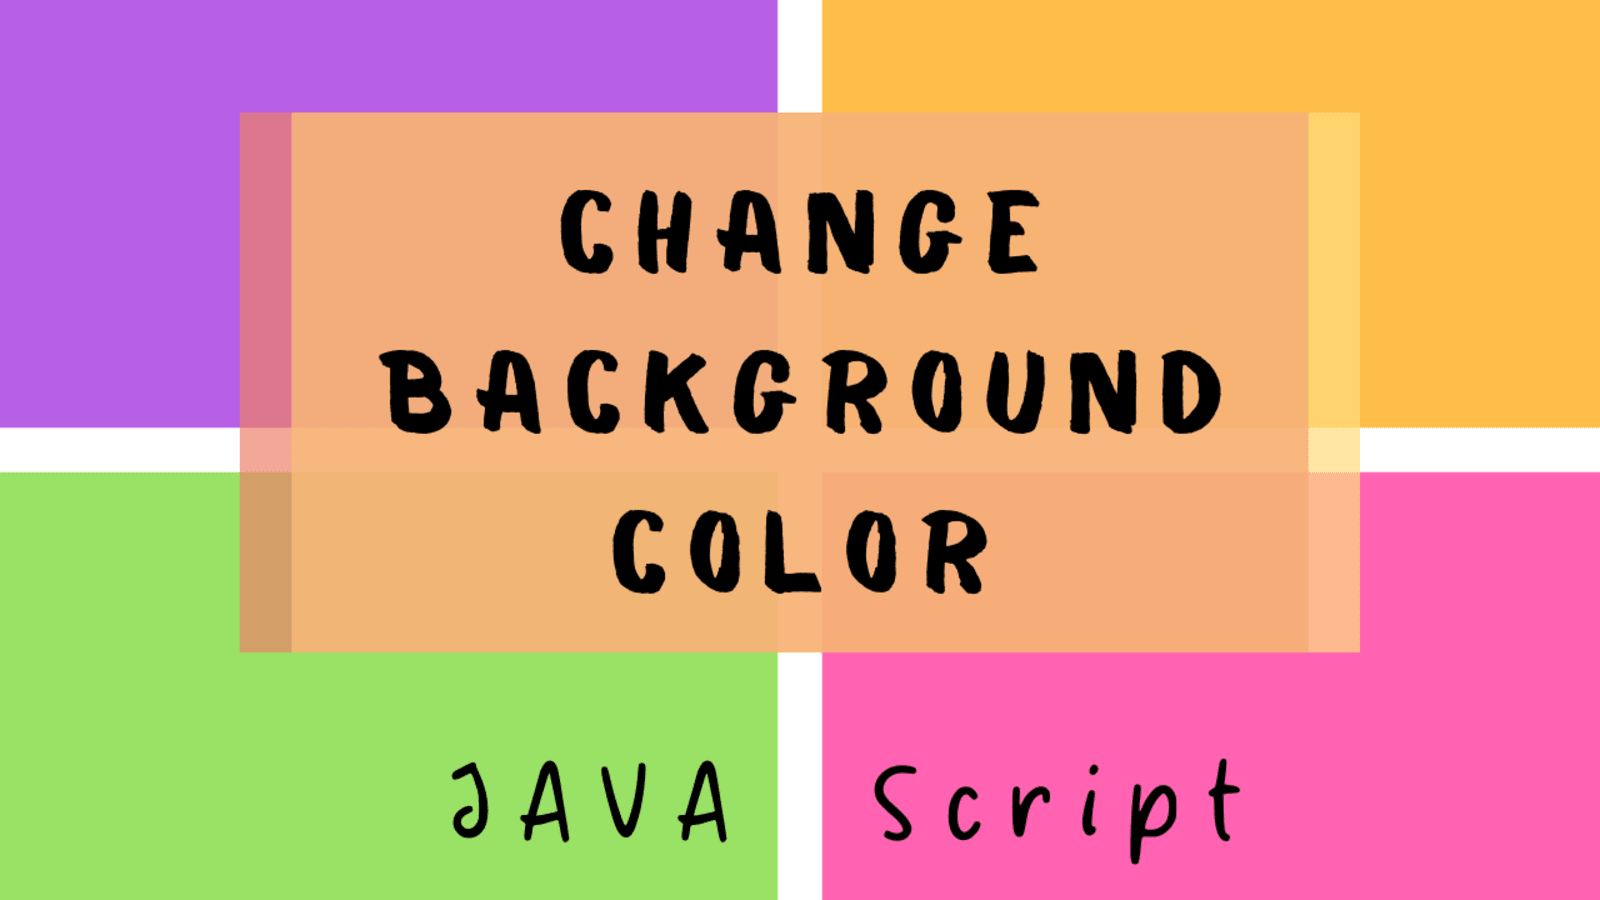 Thay đổi màu nền bằng JavaScript là cách tuyệt vời để tạo sự thay đổi và ấn tượng cho trang web của bạn. Hãy xem hình ảnh để biết cách thực hiện việc này.